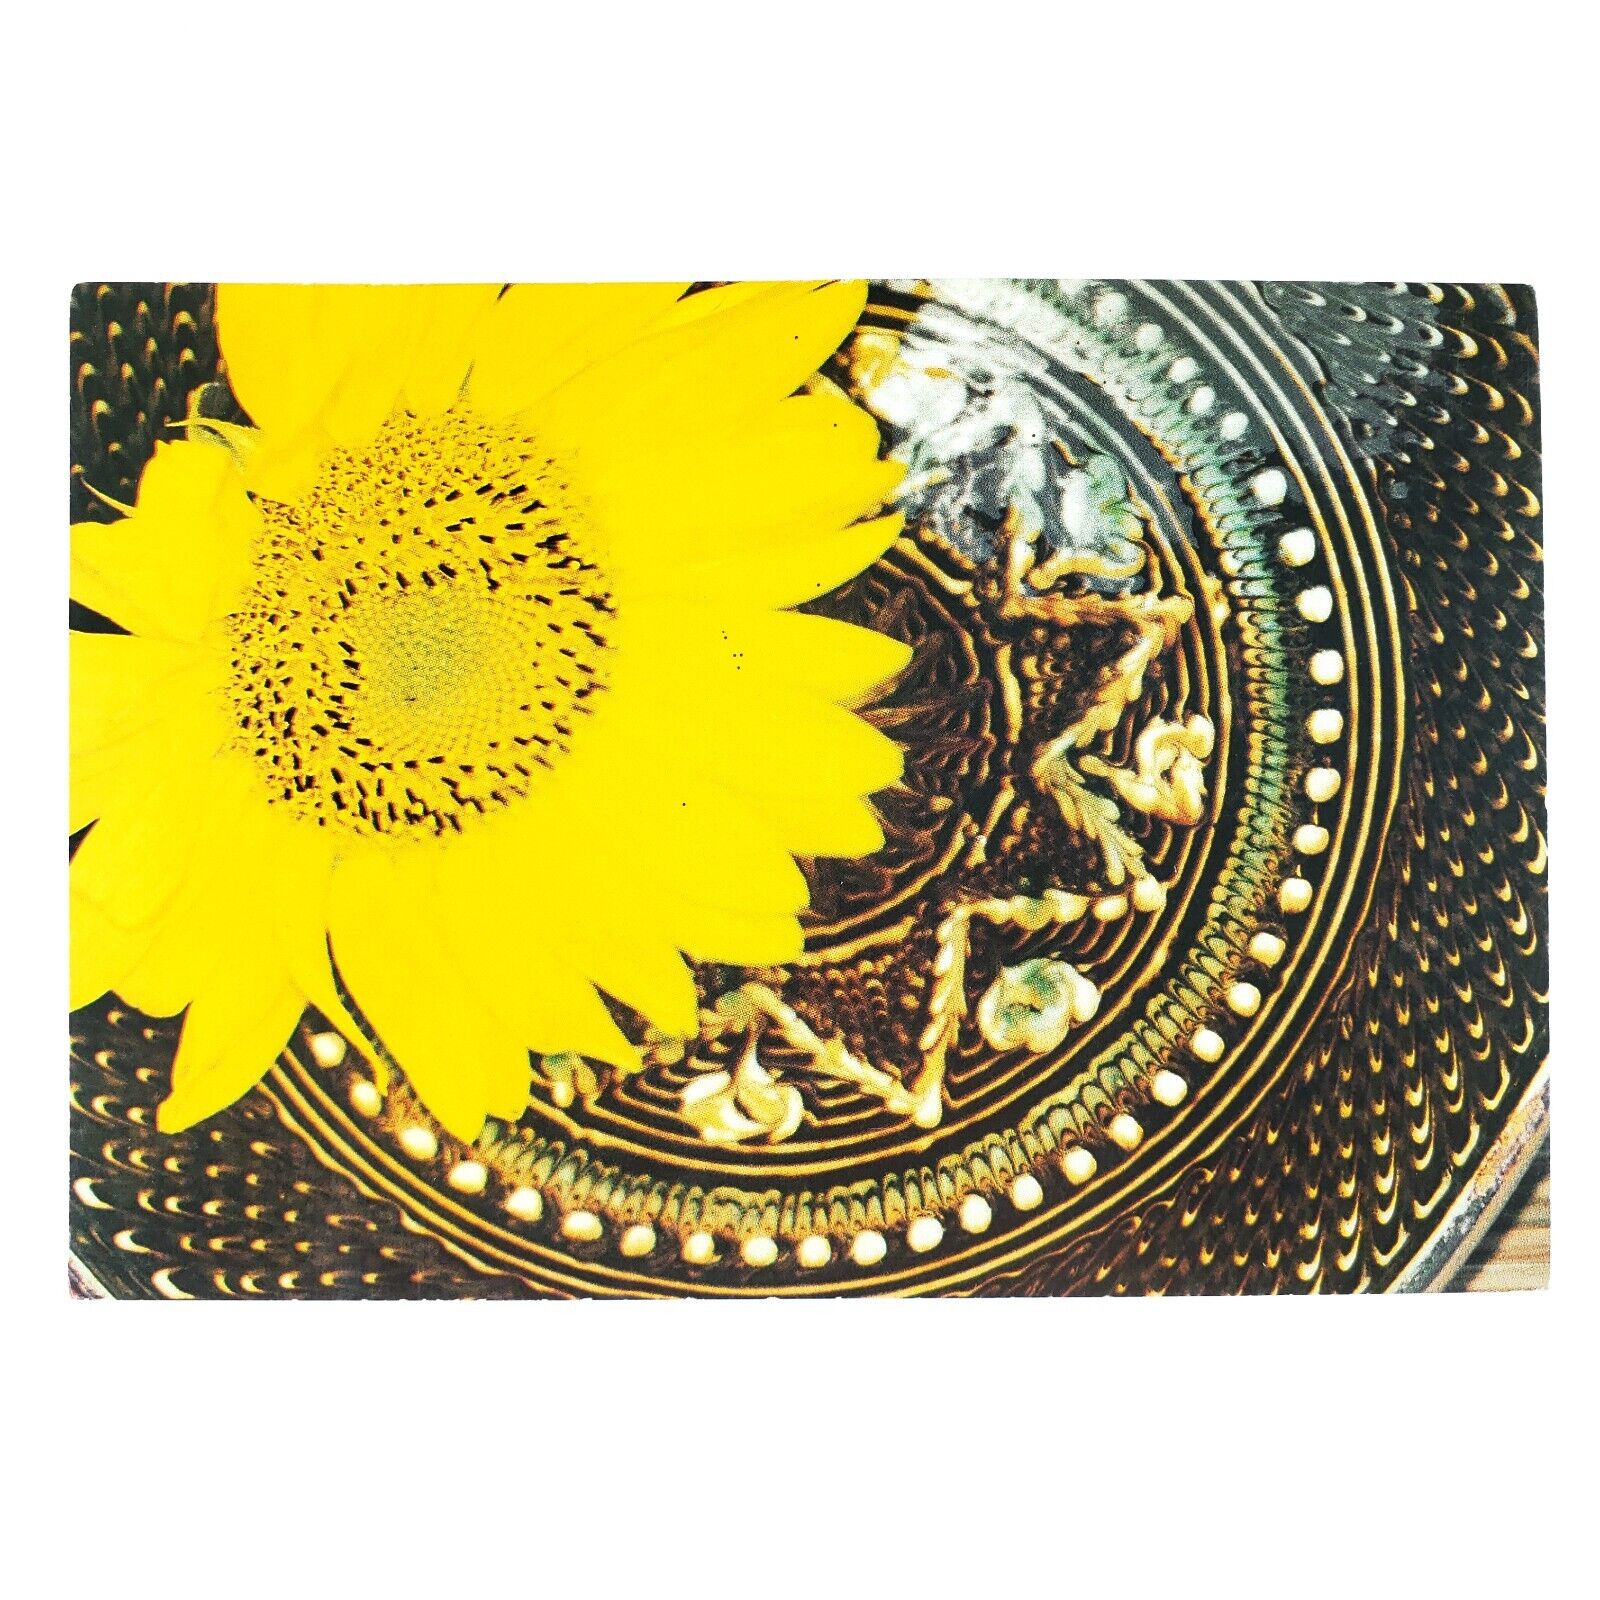 Romanian Close-Up Sunflower Postcard 4x6 Horezu Plate Still Life Art B3236